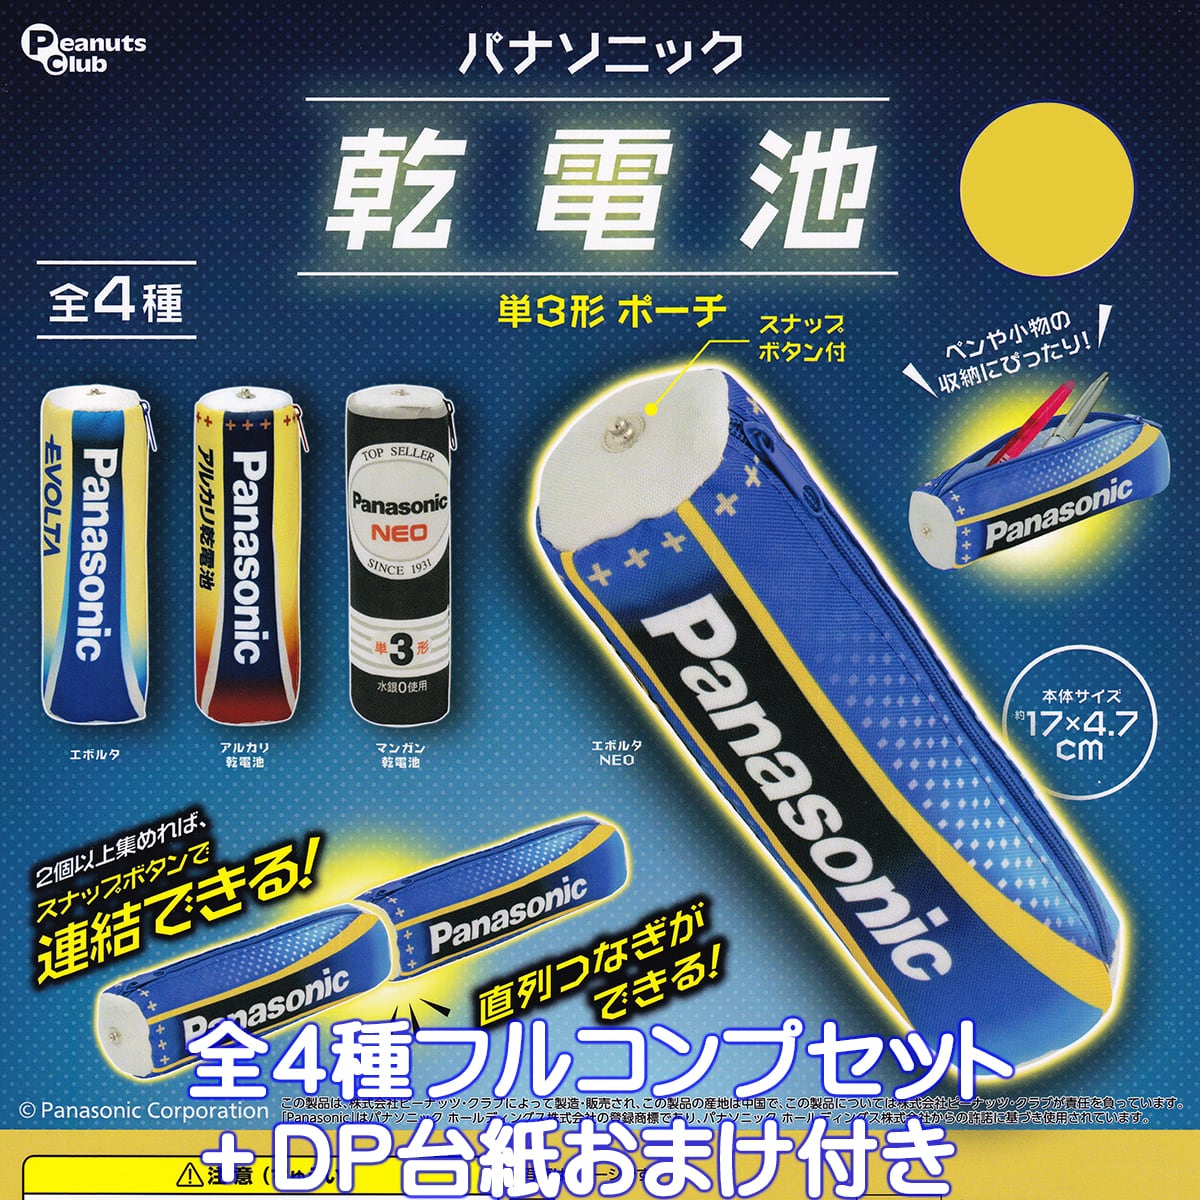 パナソニック 乾電池 単3形 ポーチ ピーナッツ・クラブ 【全4種